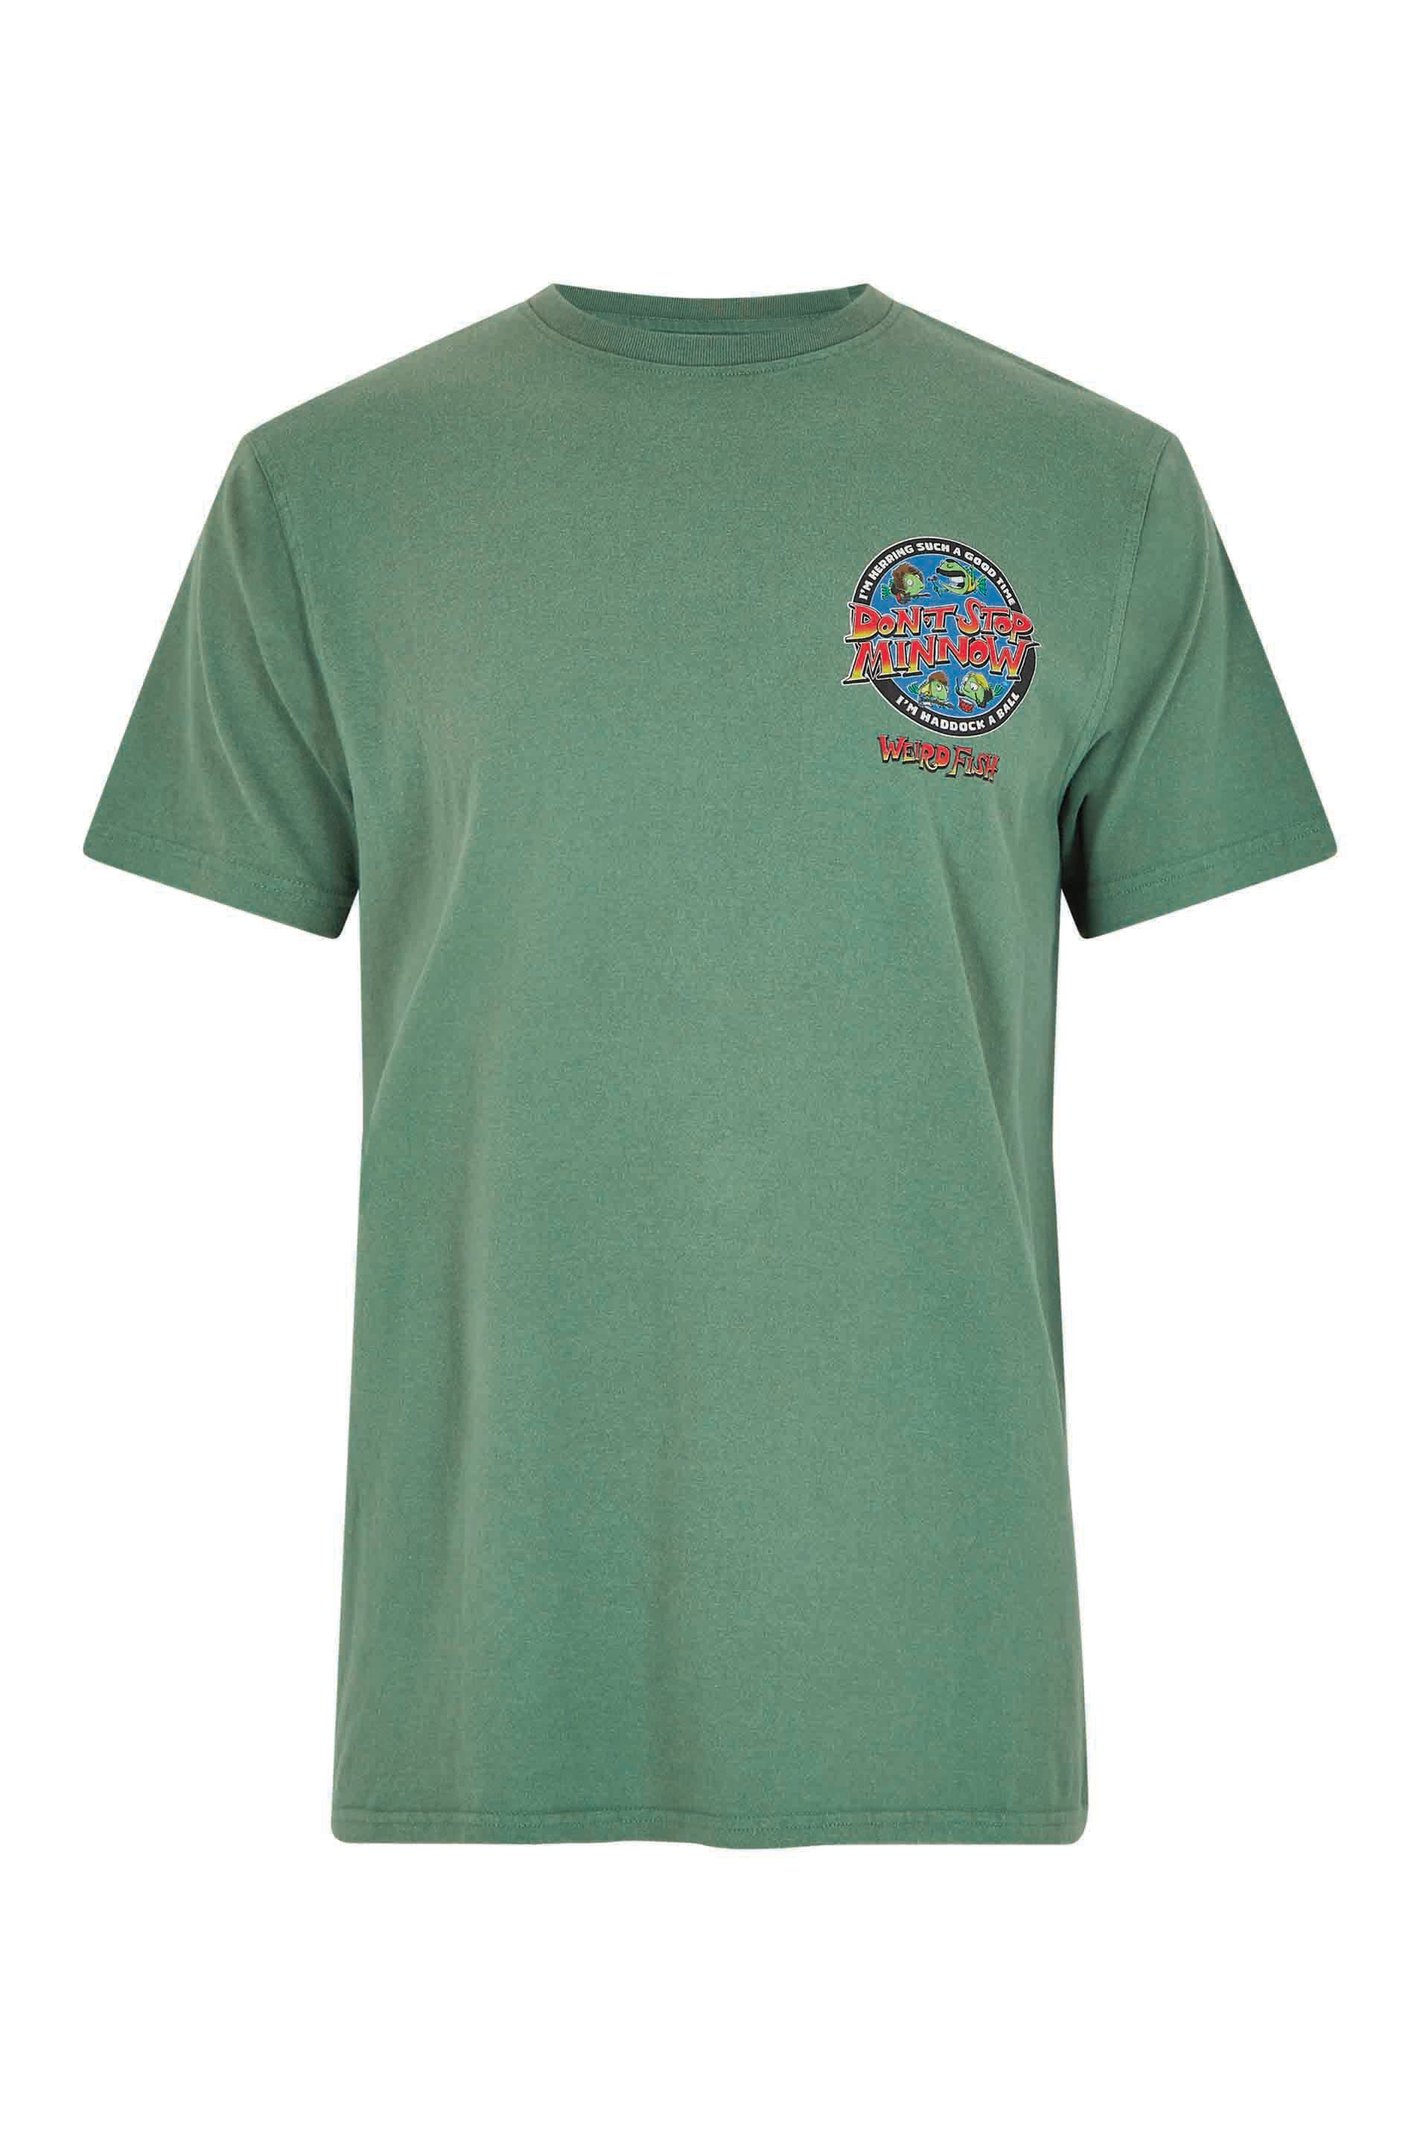 Weird Fish Stop Minnow Artist T-Shirt Dusky Green Size 4XL